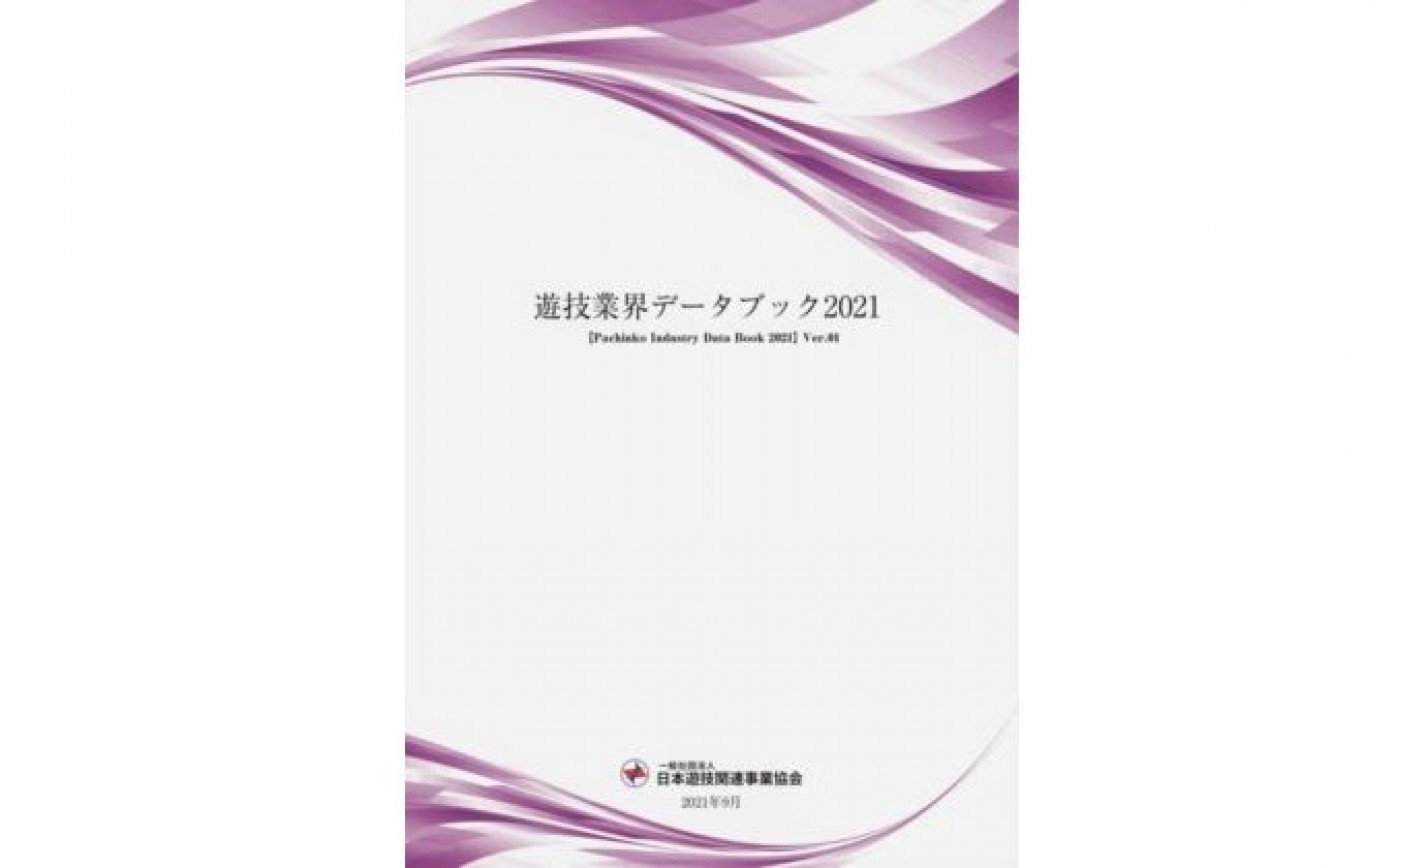 日遊協が年次レポート「遊技業界データブック2021」を発表 eyecatch-image